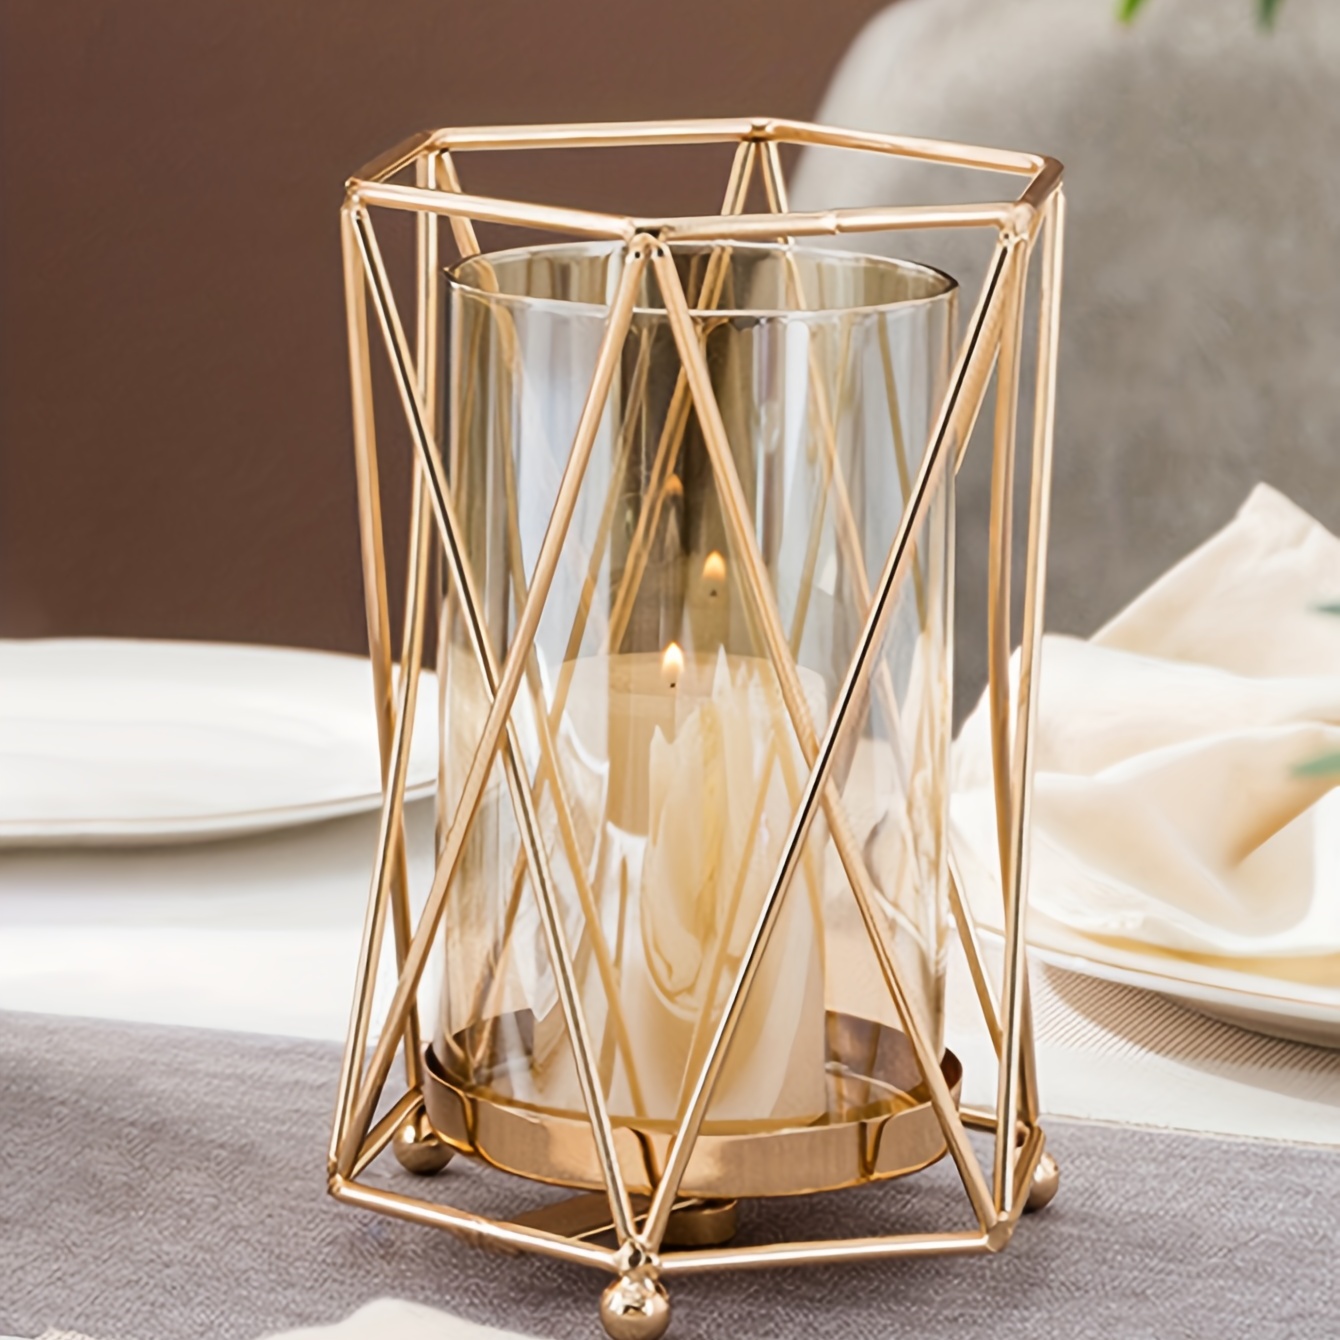 Interior's - Un dîner aux chandelles ? Merci à Flo Fait Sa Déco pour cette  photo 📷 Apportez une touche romantique et élégante avec ce photophore en  verre et métal. Son design